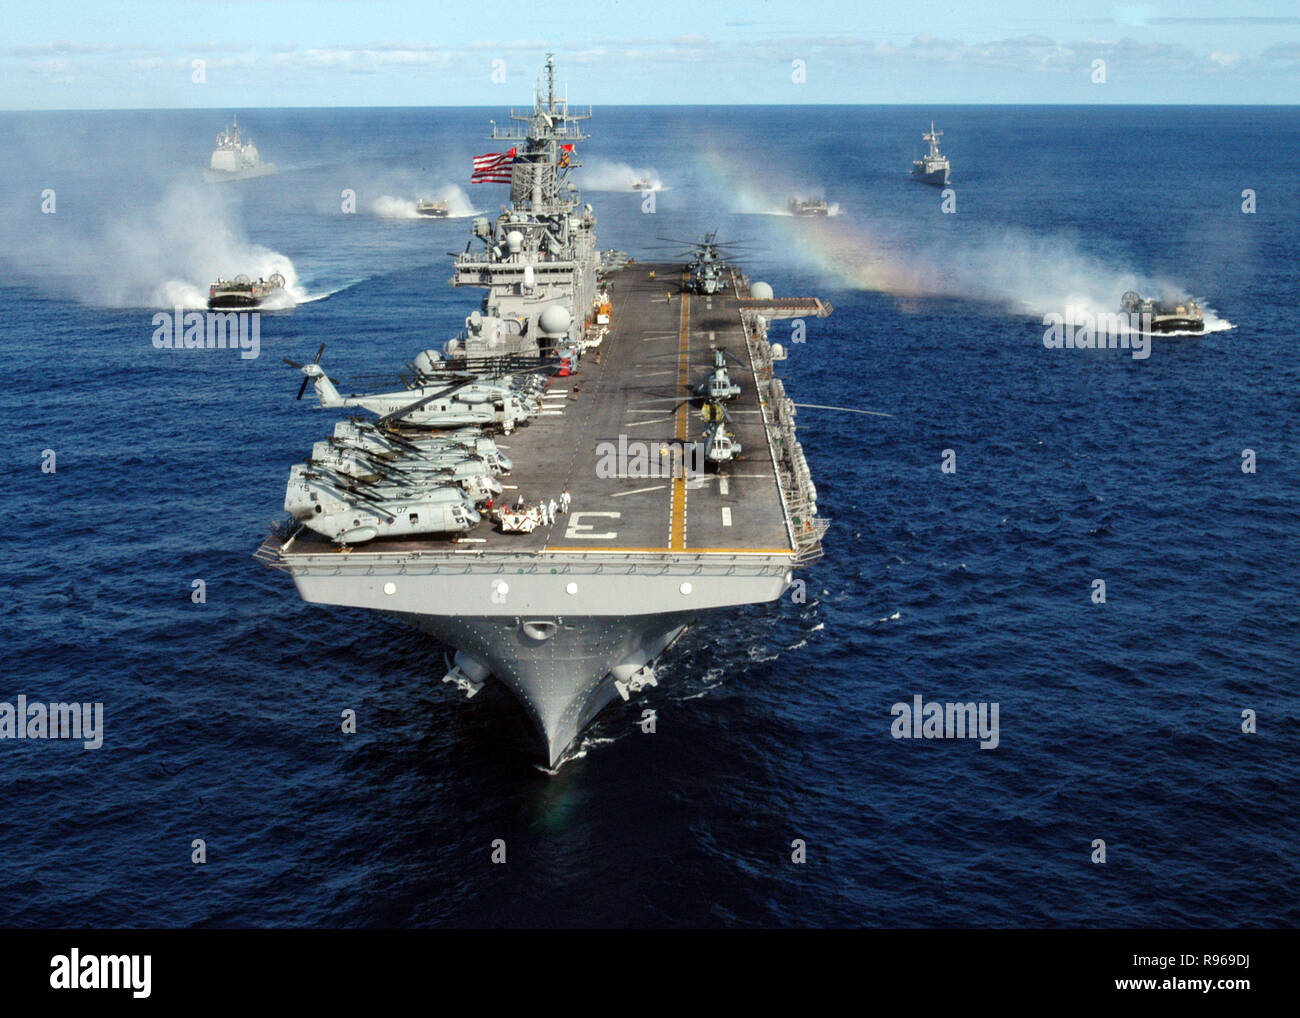 Die USS Kearsarge Expeditionary Strike Group und Landungsboote Luftpolster befestigt Assault Craft Einheit 4 im Atlantischen Ozean. DoD-Foto von Airman Finley Williams, US Navy. Stockfoto